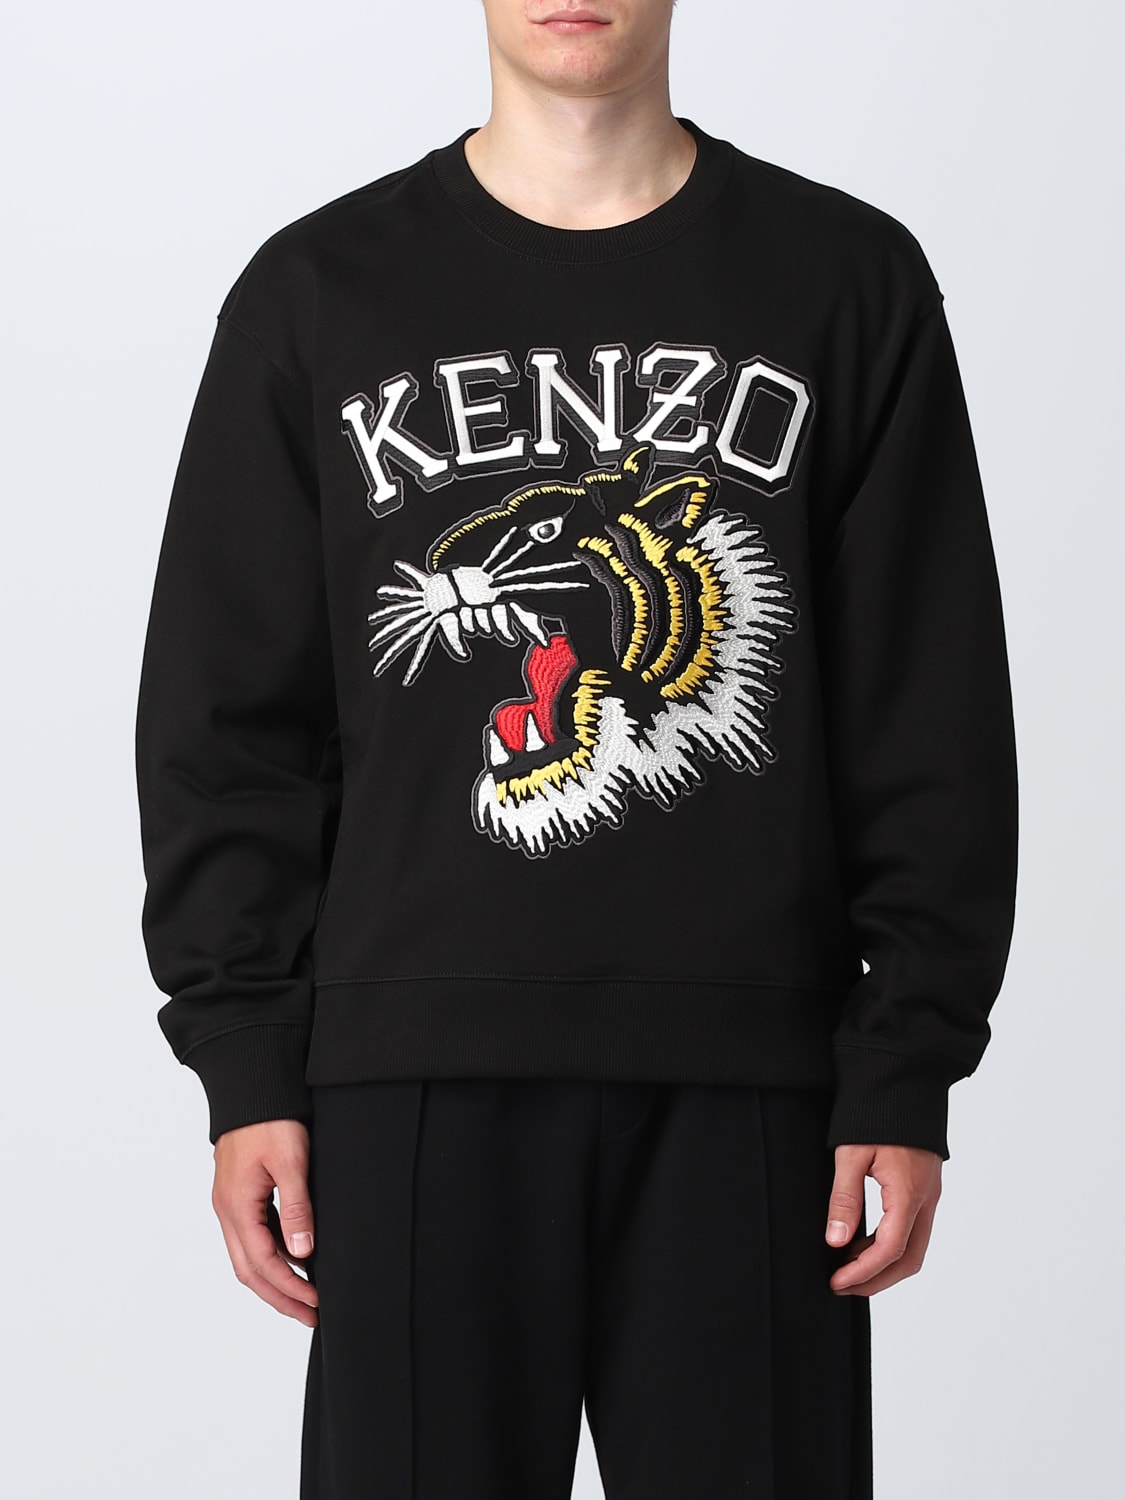 KENZO タイガーロゴ スウェットパンツ XL - その他